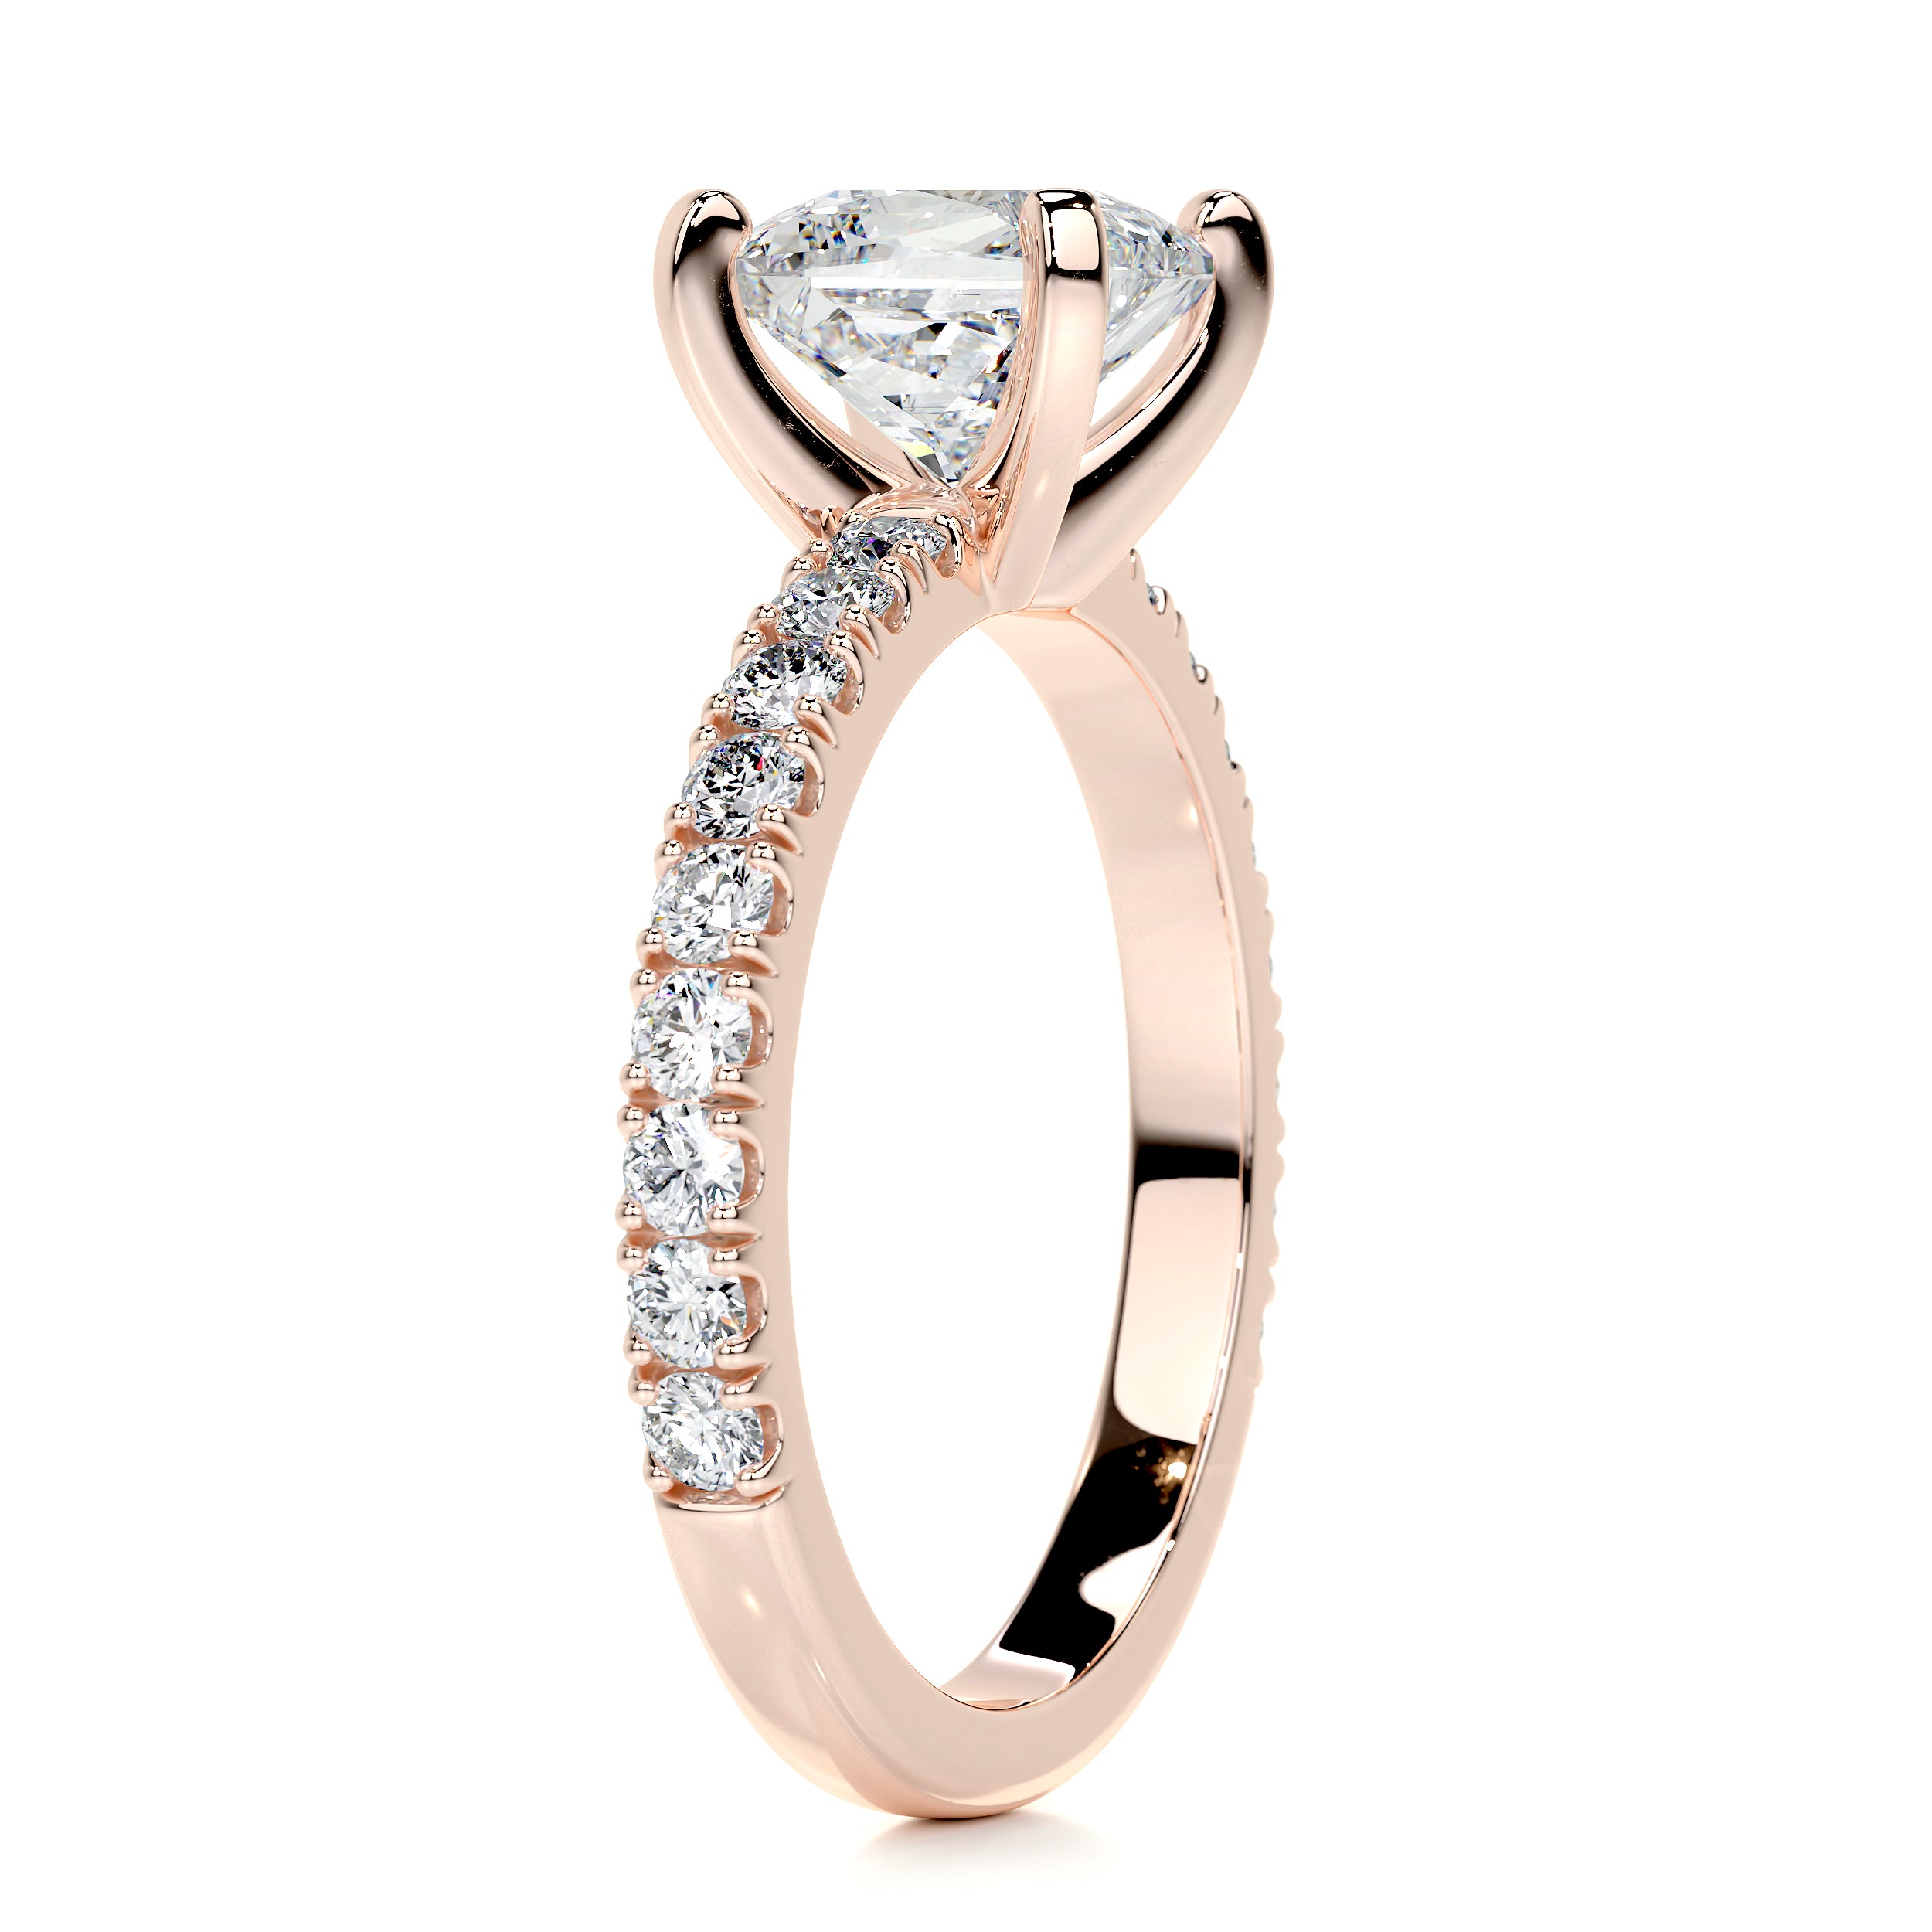 Blair Diamond Engagement Ring   (2 Carat) -14K Rose Gold